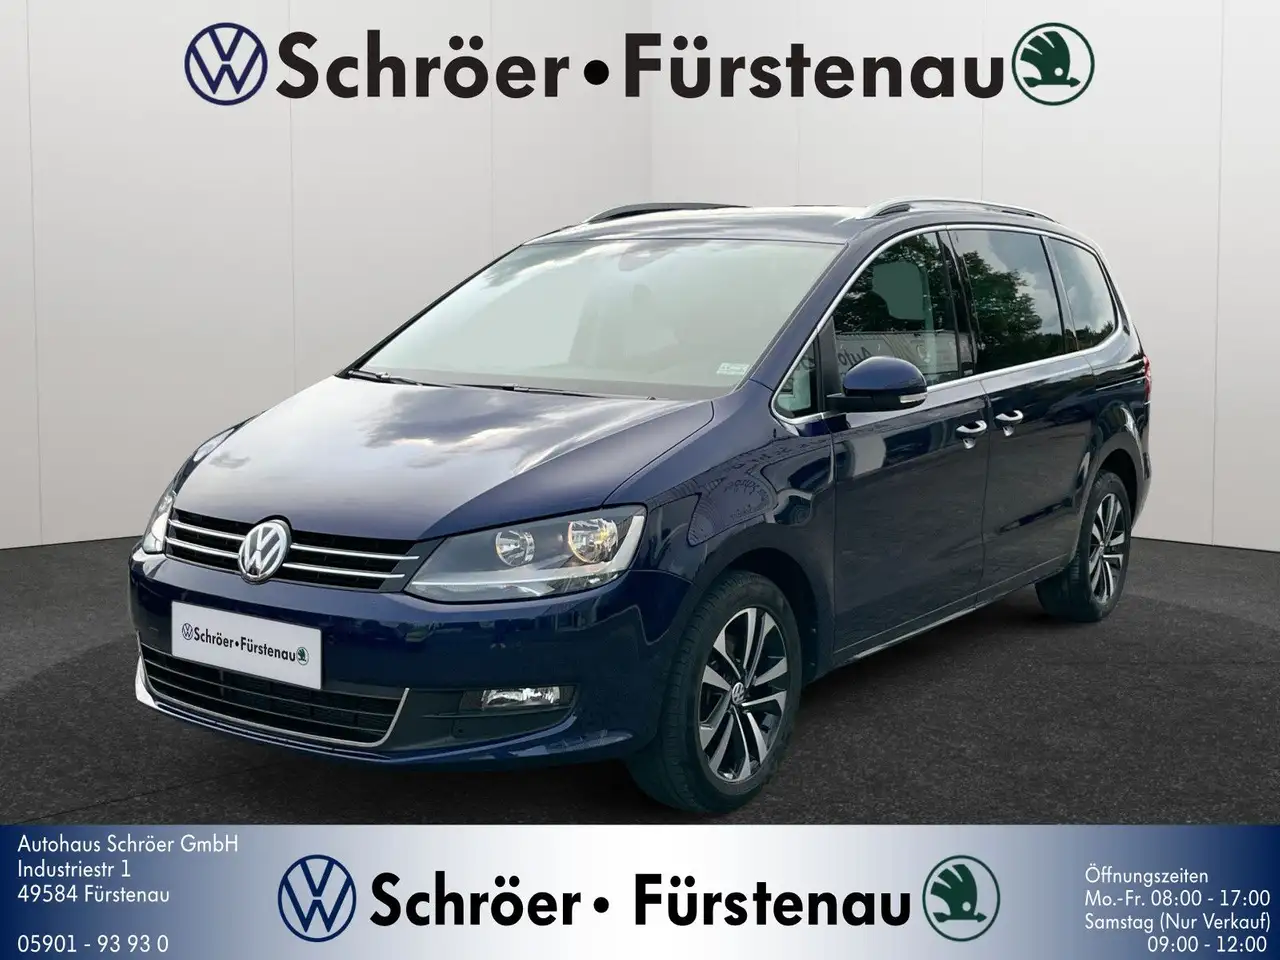 Volkswagen Sharan 2.0 TDI DSG Comf. 7-Sitzer gebraucht kaufen in Pfullingen  Preis 32900 eur - Int.Nr.: 837 VERKAUFT